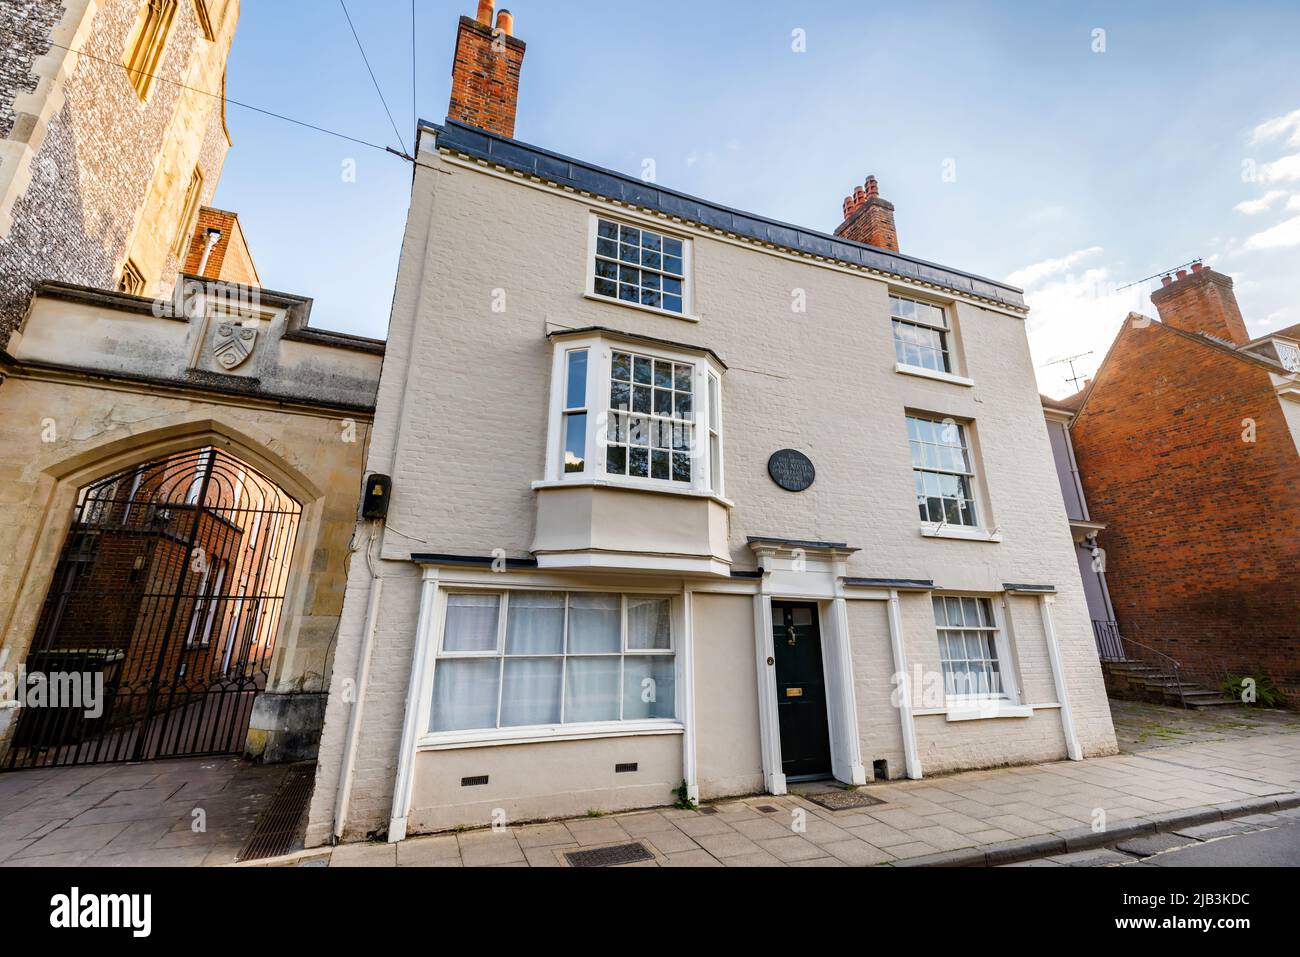 La maison historique dans laquelle la romancière Jane Austen vécut et mourut en 1817, dans College Street, Winchester, Hampshire, Angleterre, avec plaque commémorative Banque D'Images